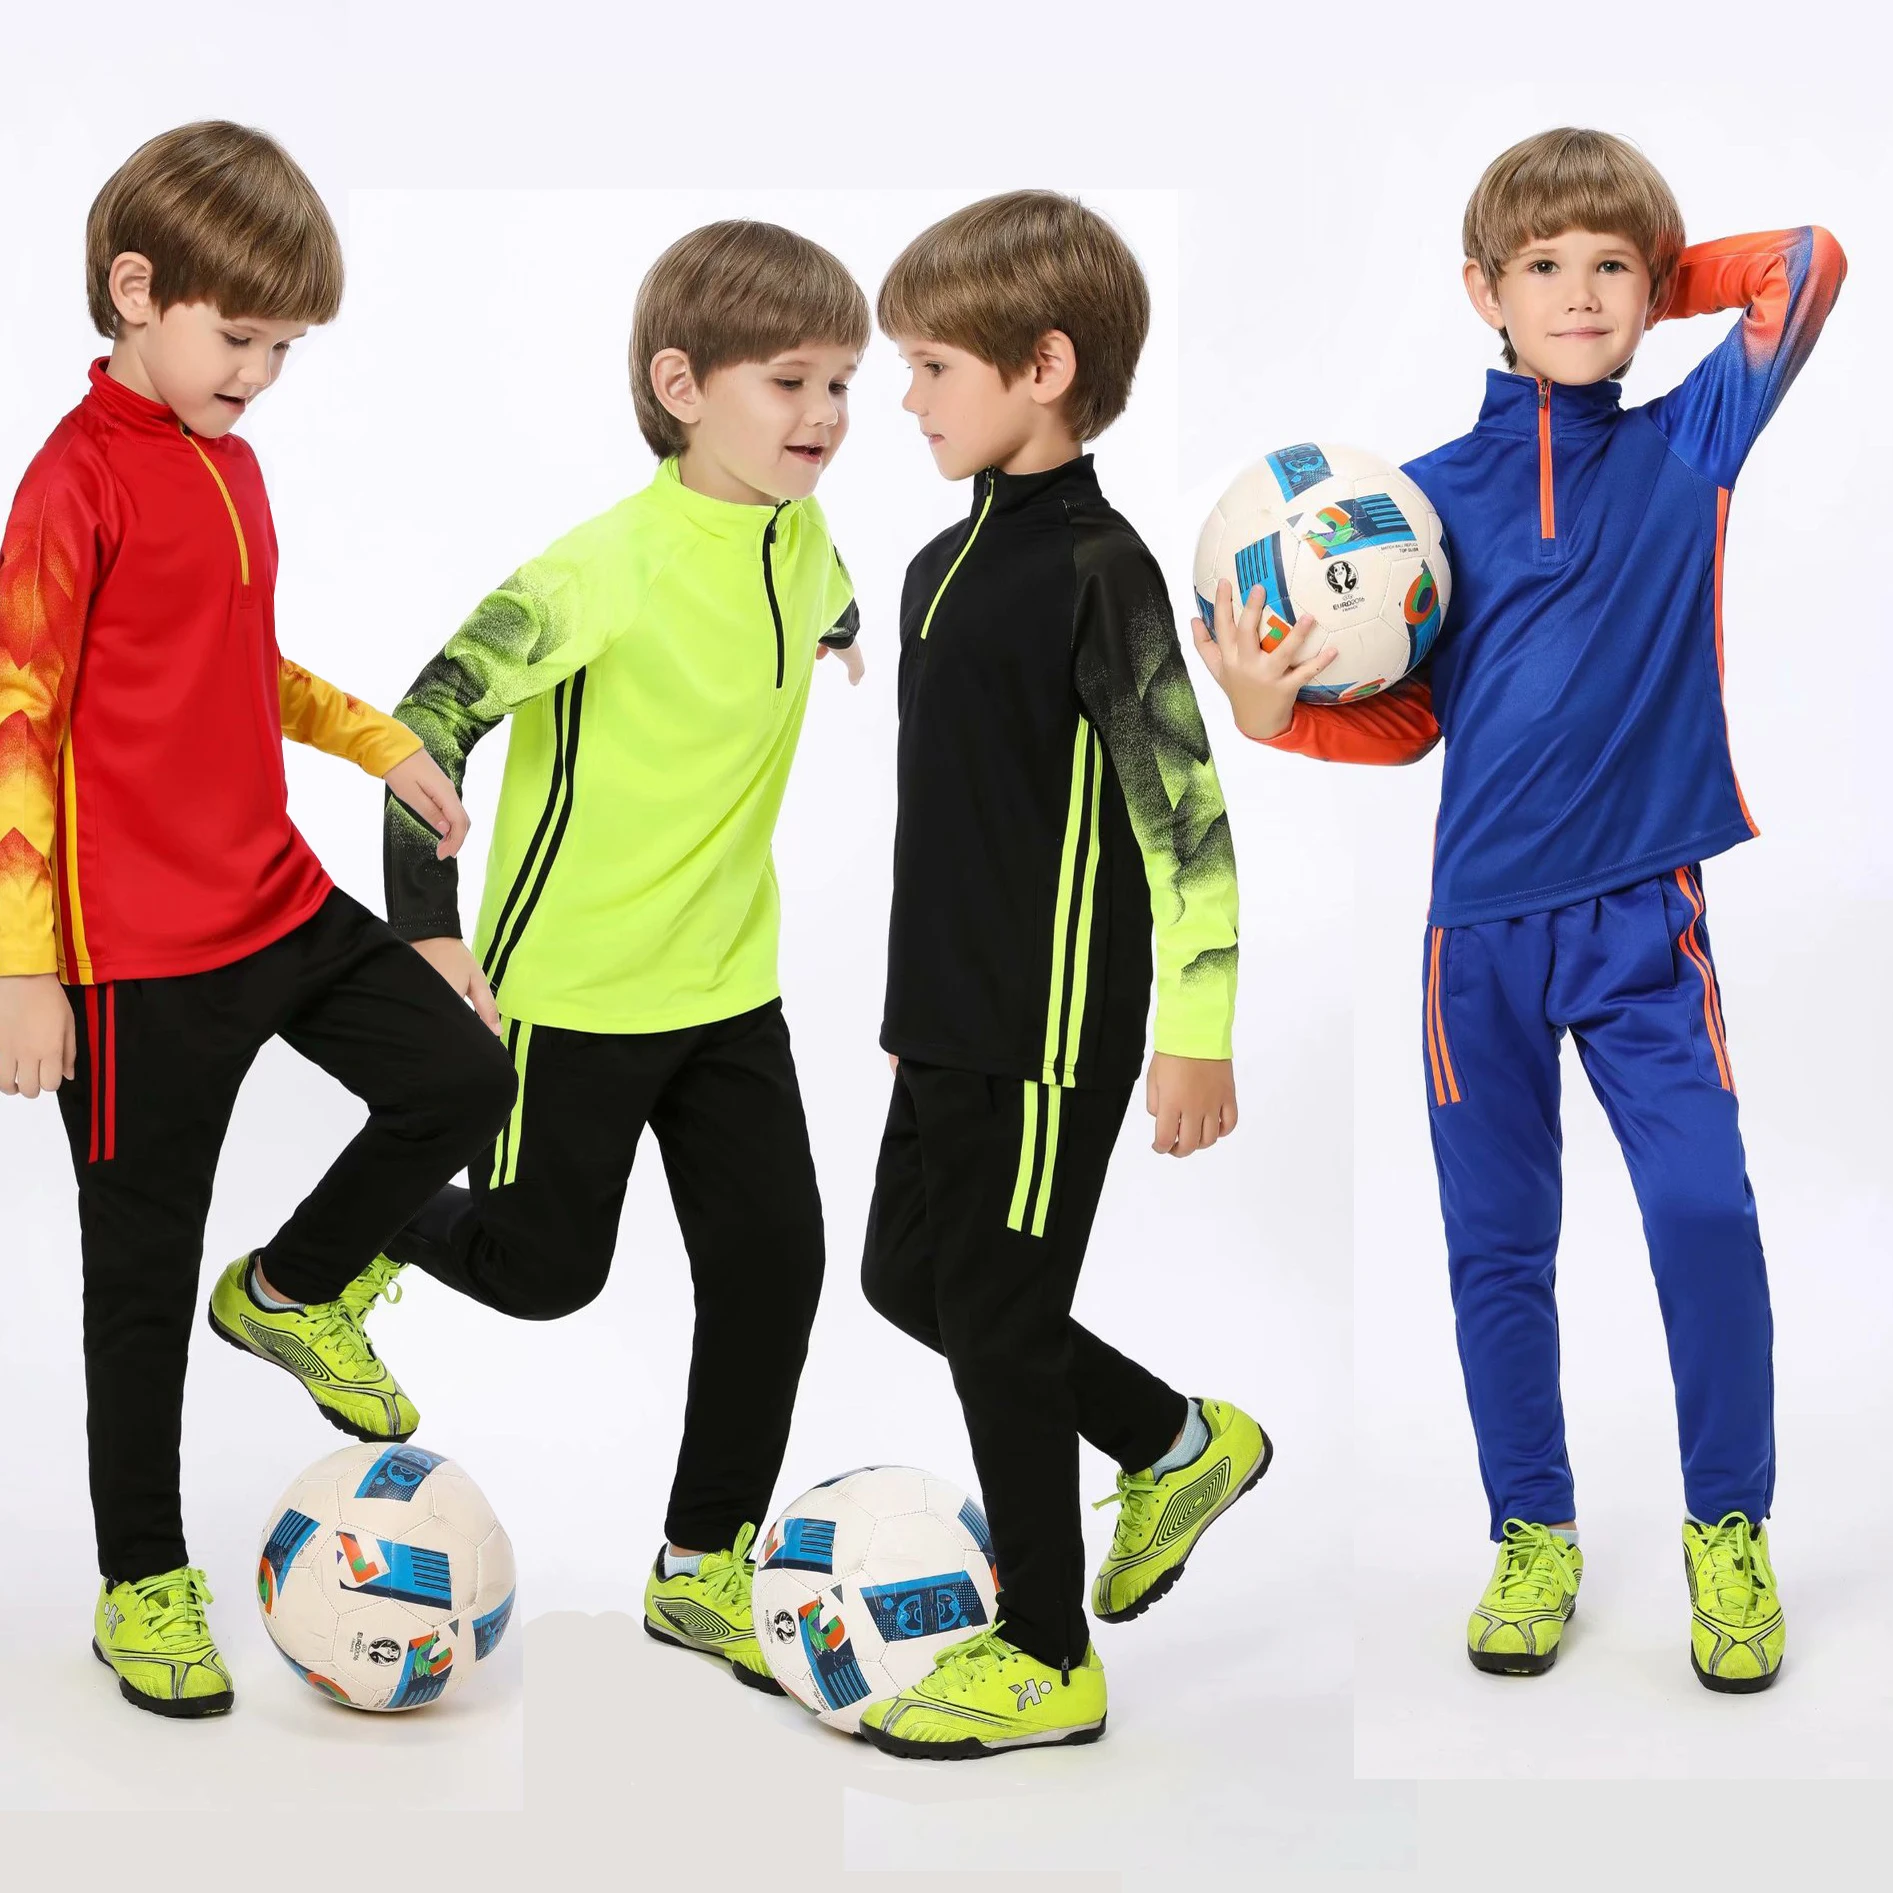 

Детский футбольный тренировочный костюм для мальчиков на молнии, футбольная куртка, штаны, мужские футбольные трикотажные комплекты, одежда для активного спорта, футбольная тренировочная униформа